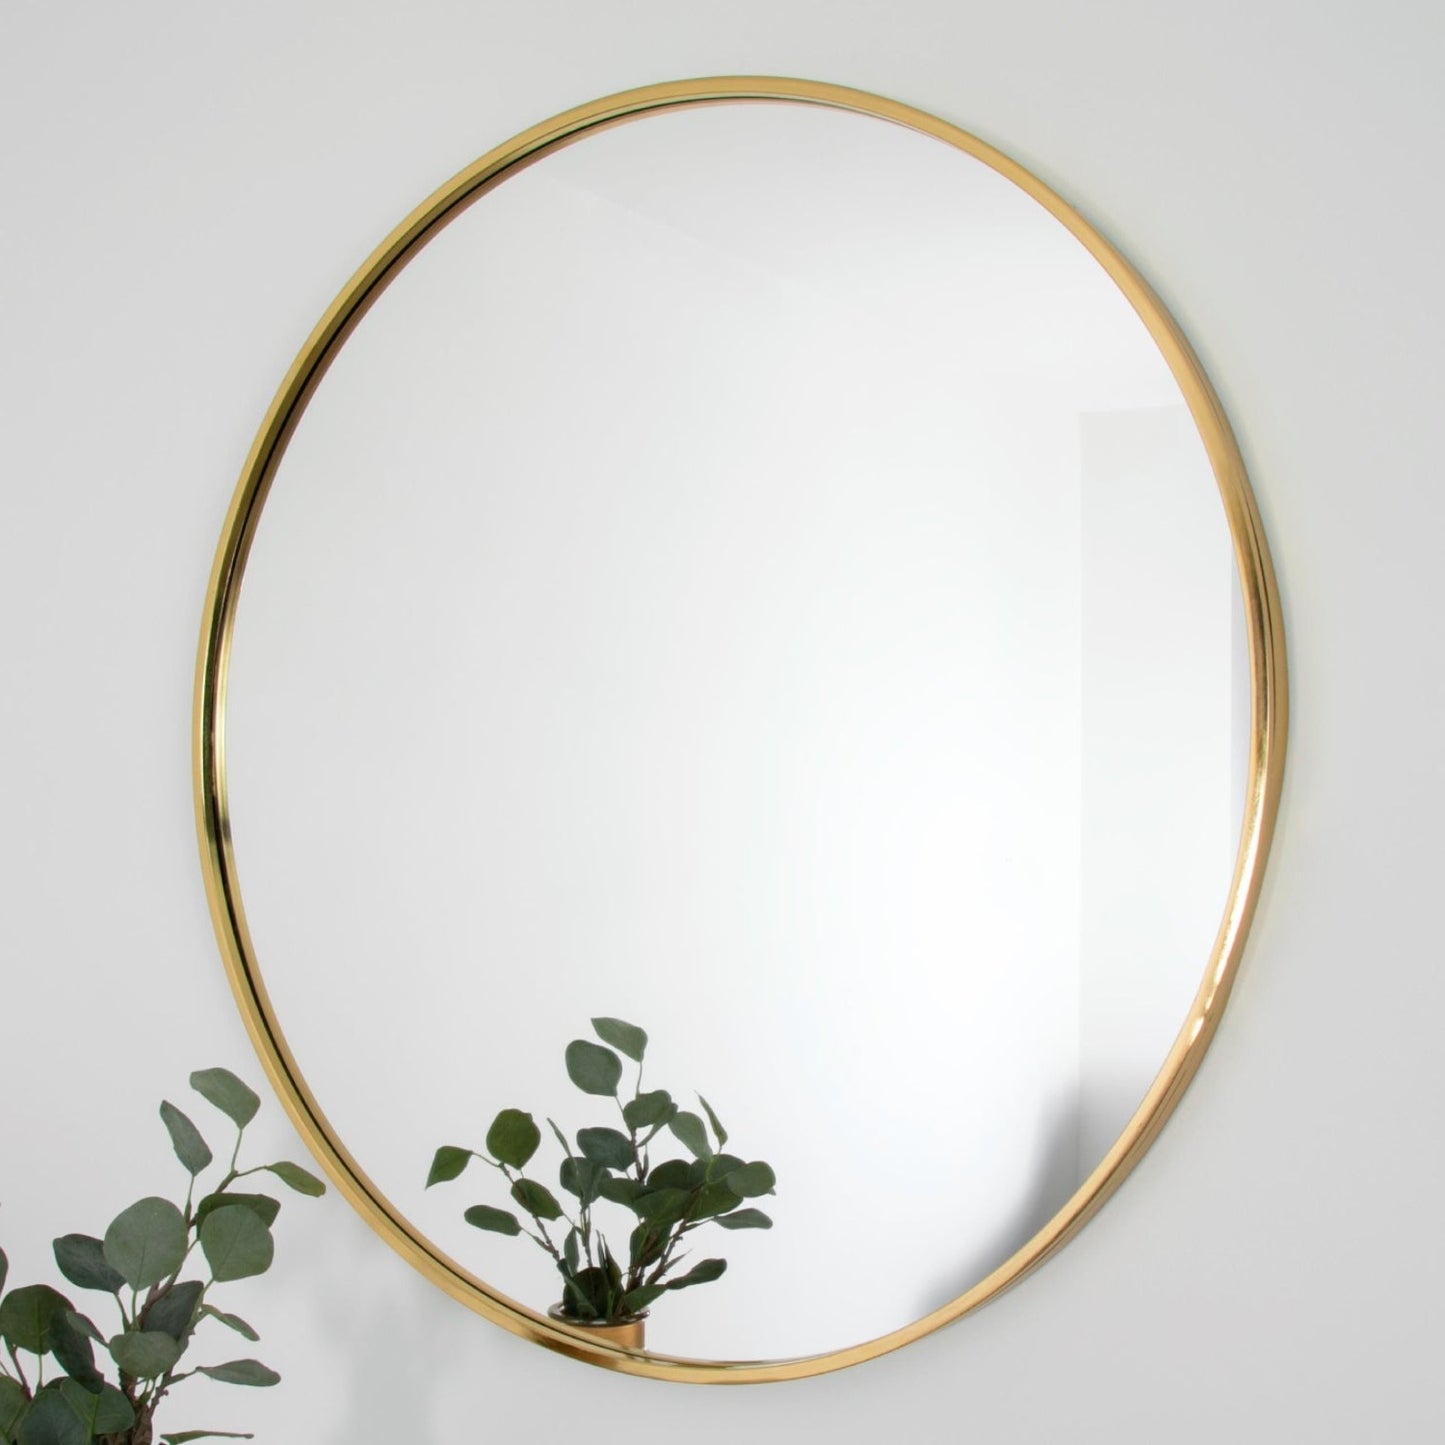 Gold manhattan round mirror - medium by Native